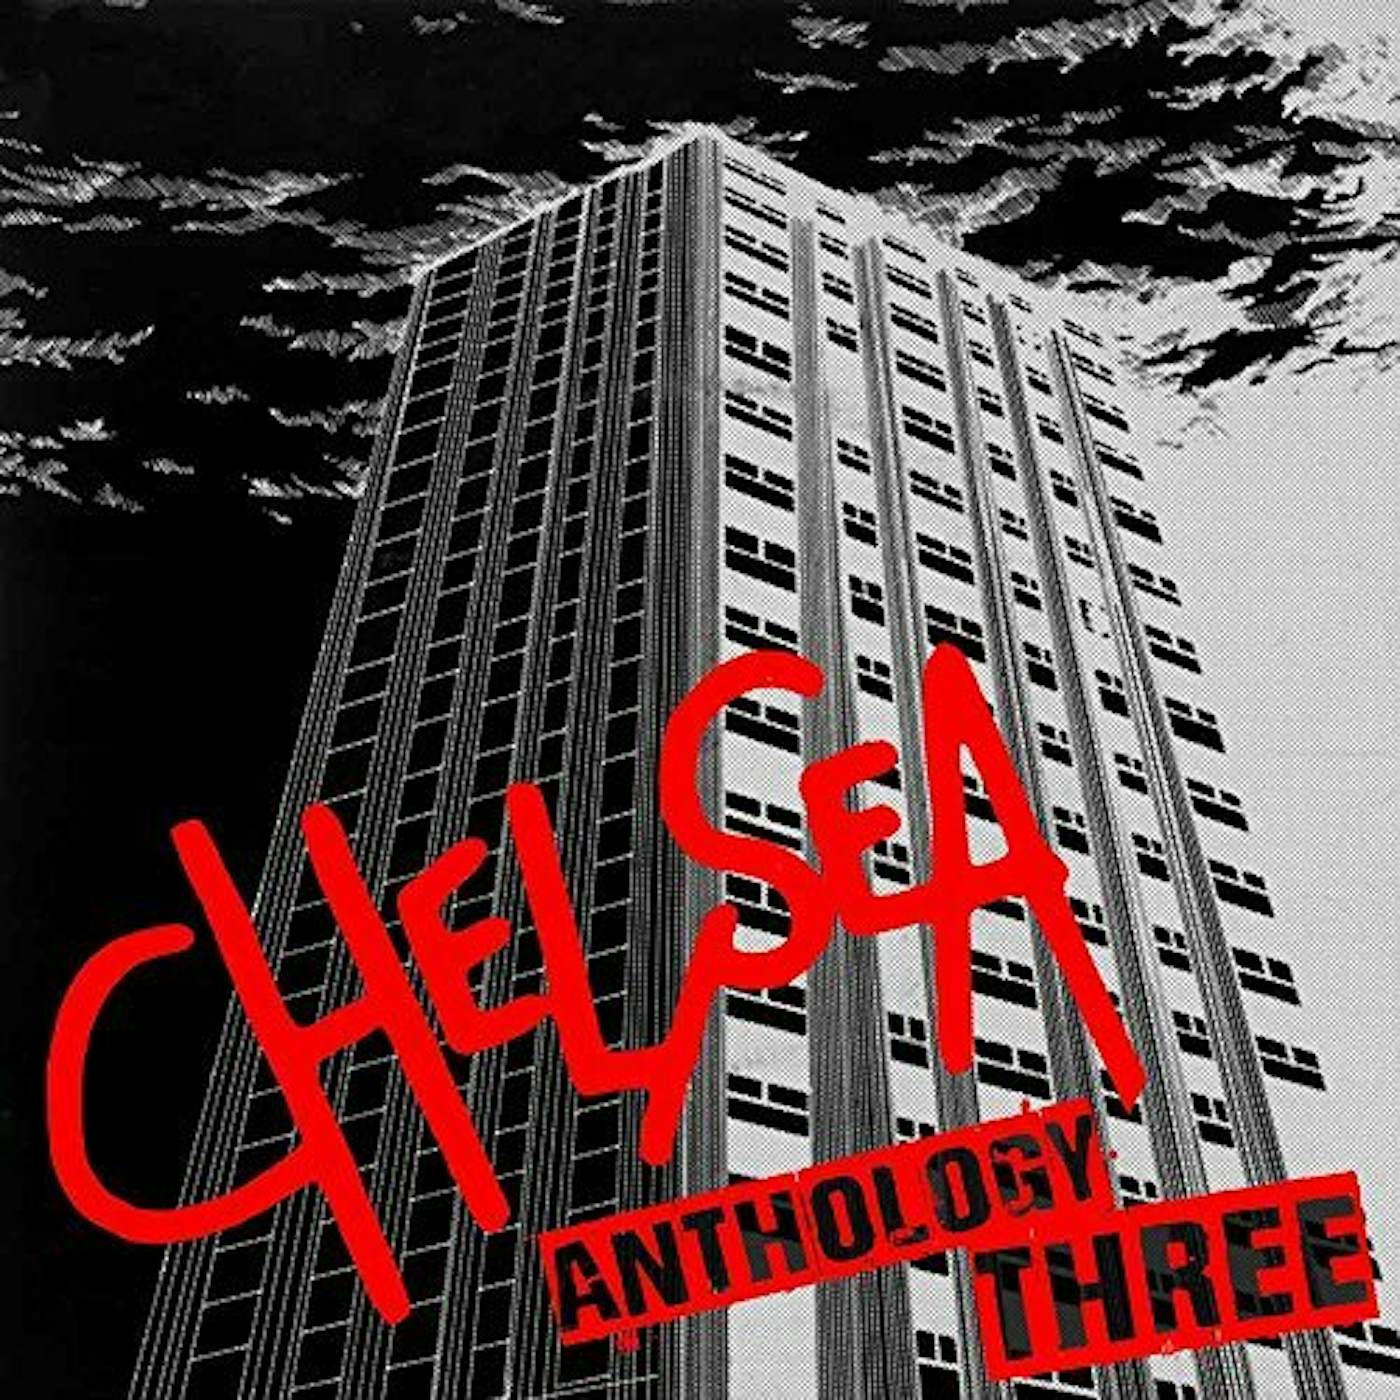 Chelsea ANTHOLOGY 3 CD